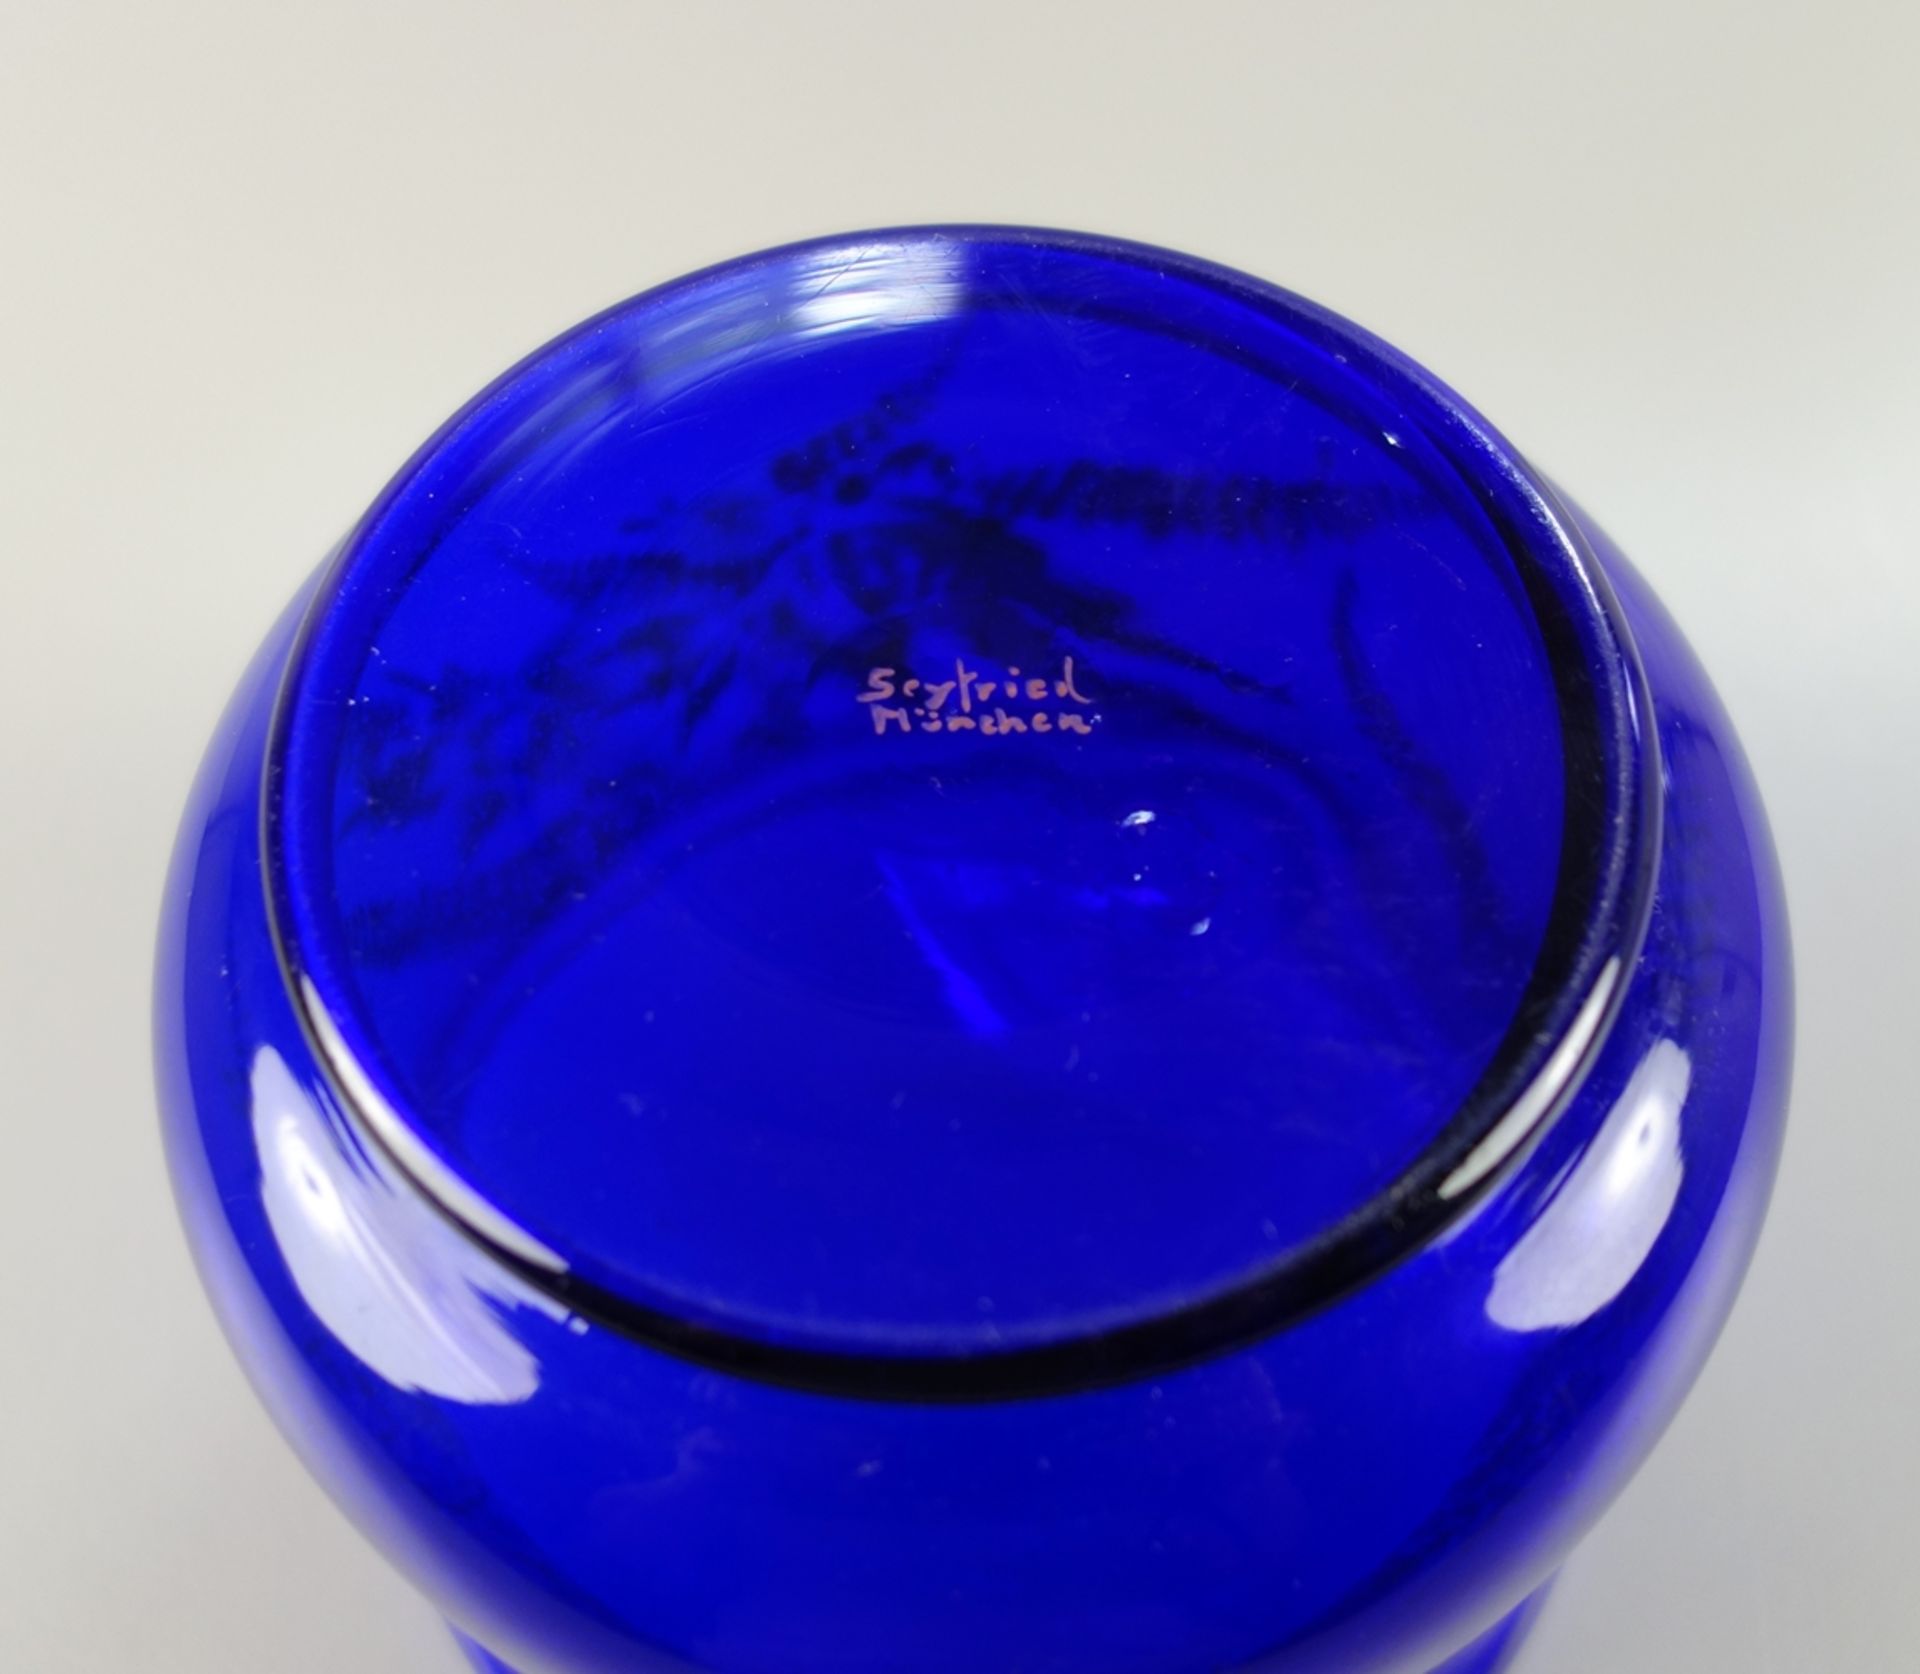 Vase aus Blauglas, Emmy Seyfried, München (1888-1969), 1920er Jahre - Bild 2 aus 2